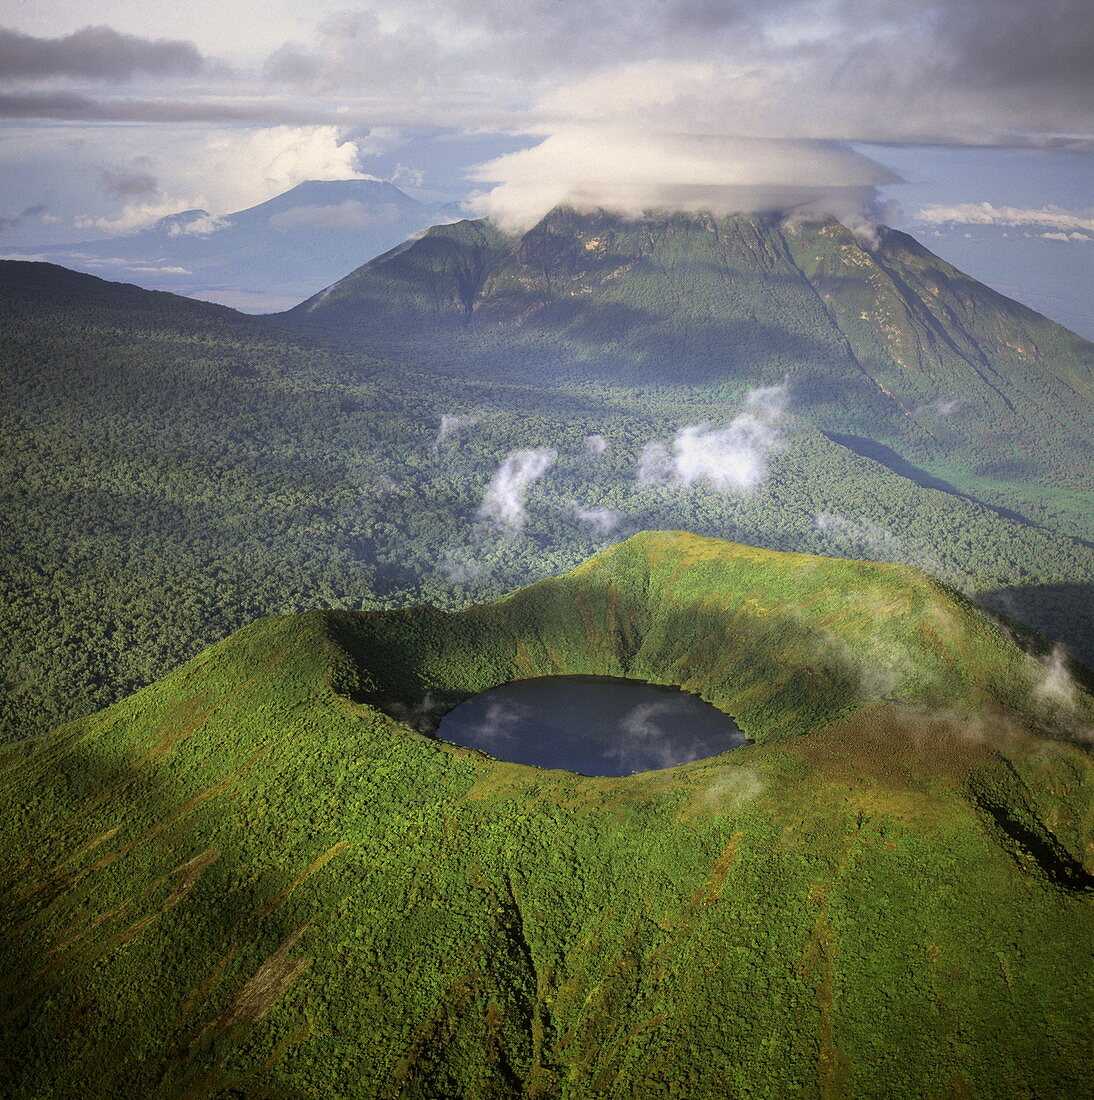 Luftaufnahme des Mount Visoke (Mount Bisoke), eines erloschenen Vulkans an der Grenze zwischen Ruanda und der Demokratischen Republik Kongo (DRC), mit Kratersee und dem Mount Mikeno im Hintergrund, Virunga-Vulkane, Great Rift Valley, Afrika